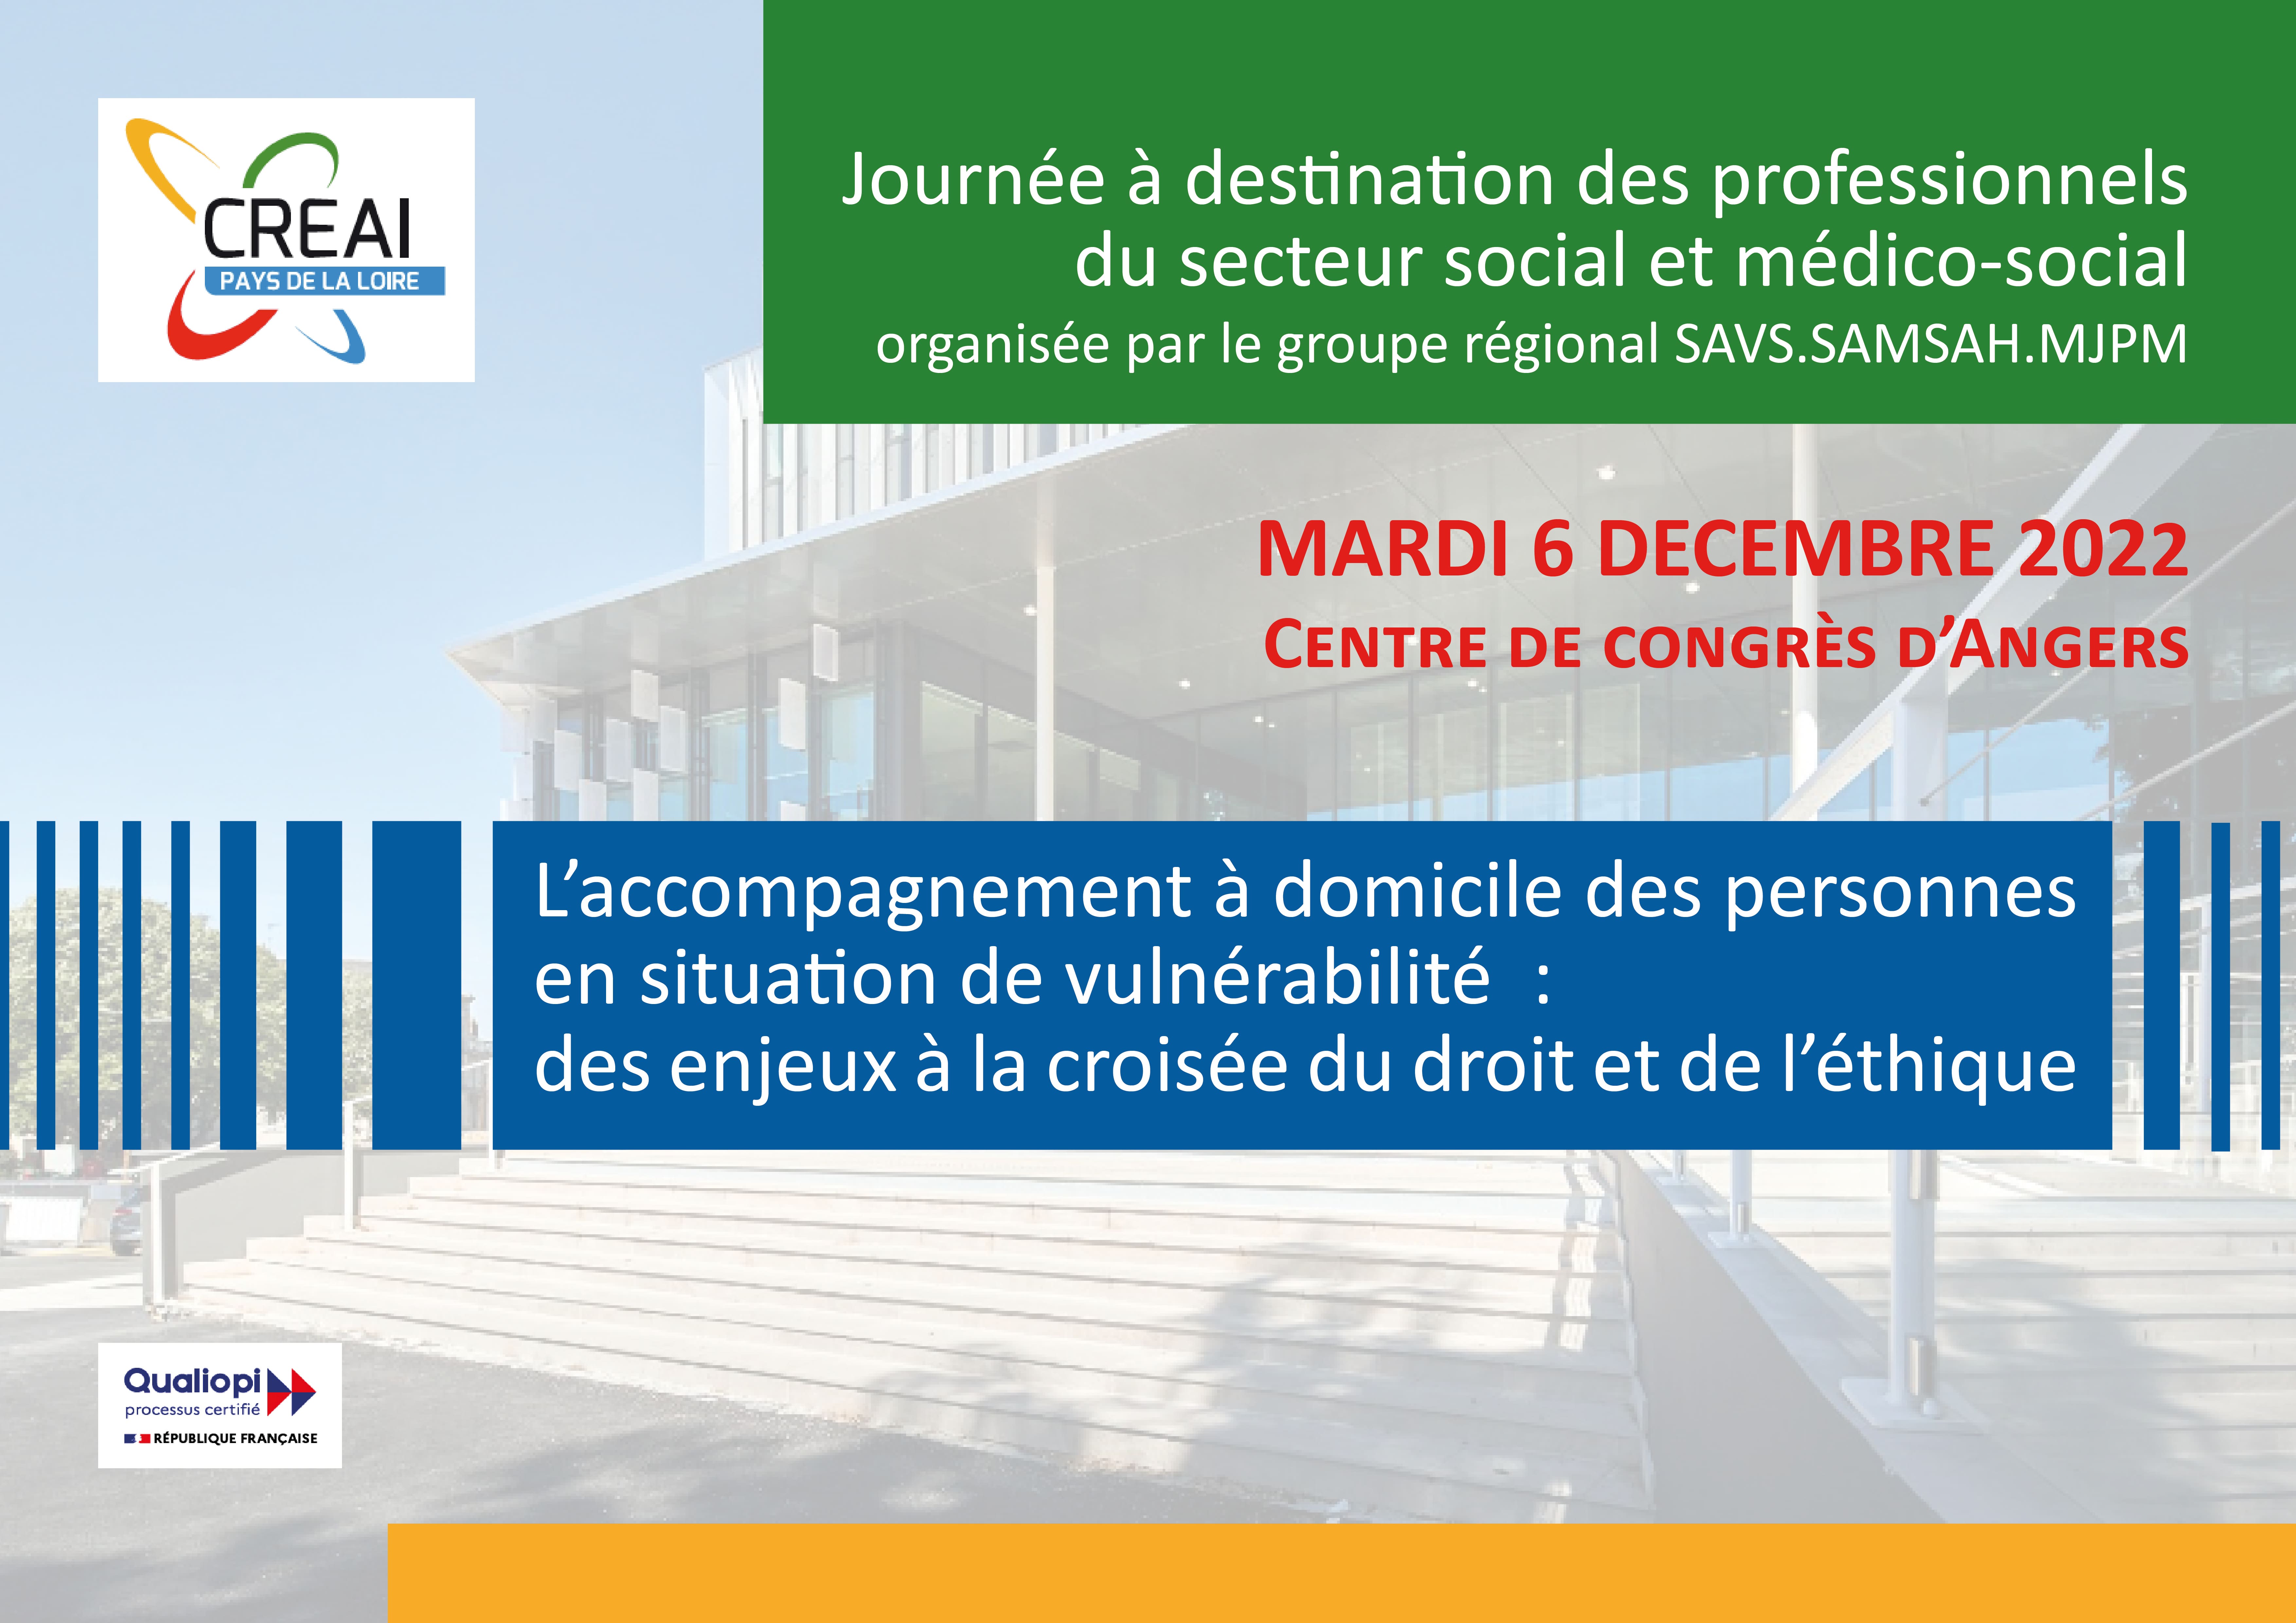 Le 6 décembre 2022 : Journée à destination des professionnels du secteur social et médico-social organisée par le groupe régional SAVS.SAMSAH.MJPM